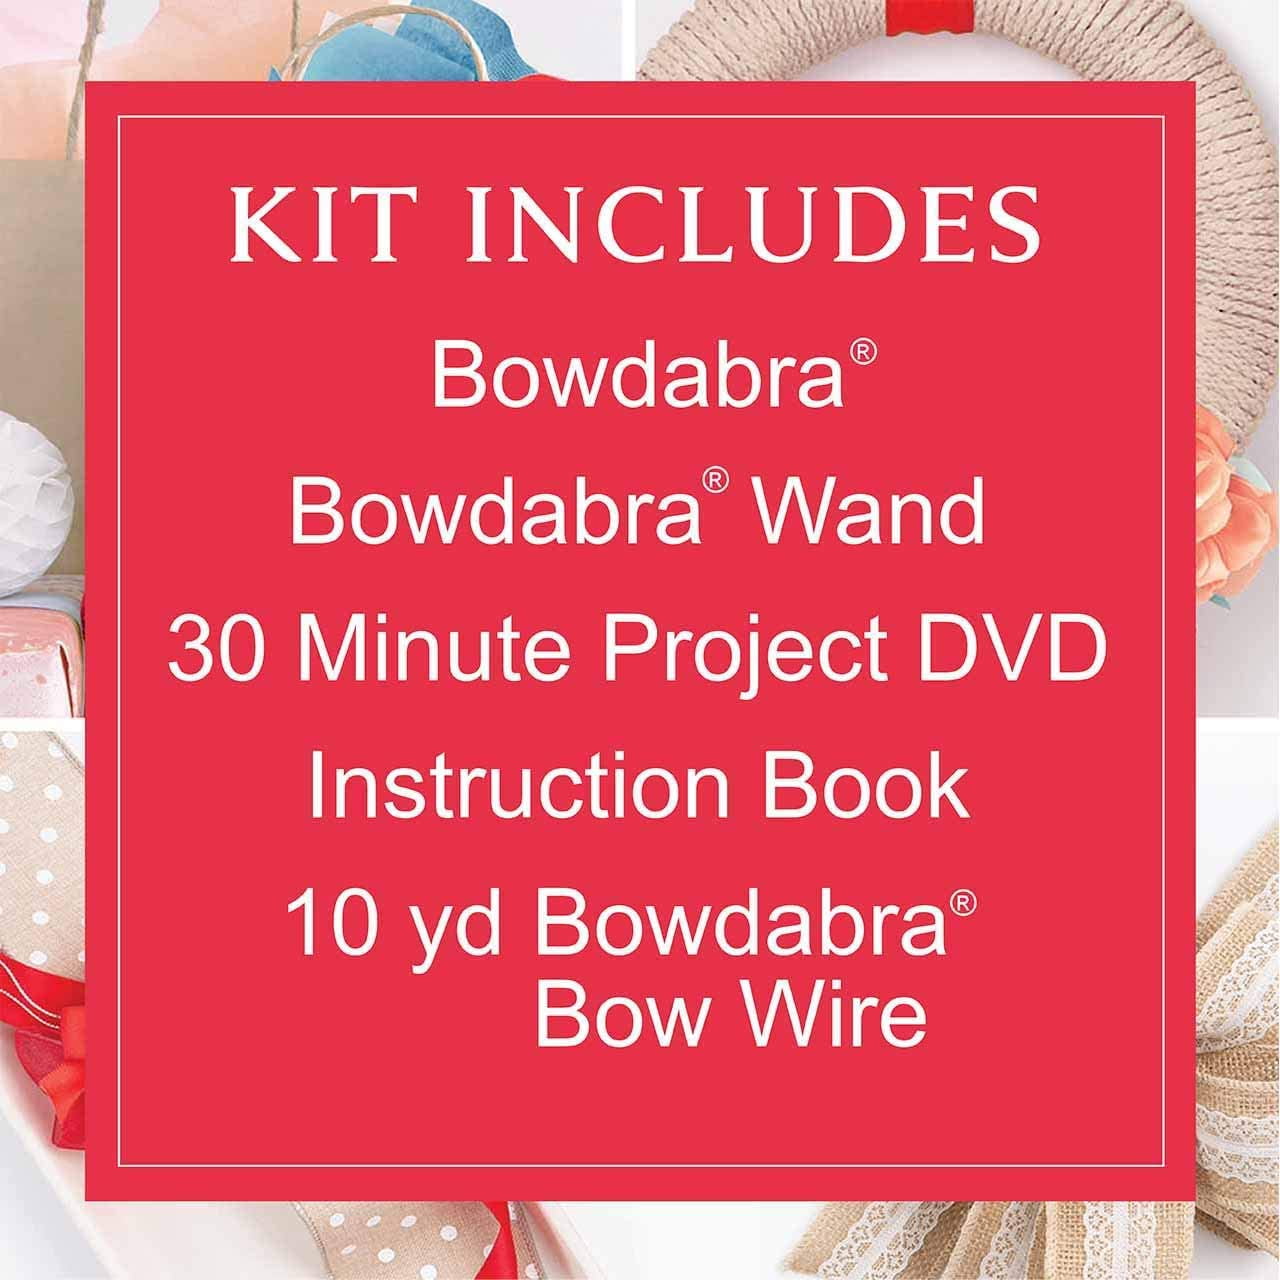 Bowdabra Designer Bowmaker Kit  Hobby lobby, Kit, Print coupons